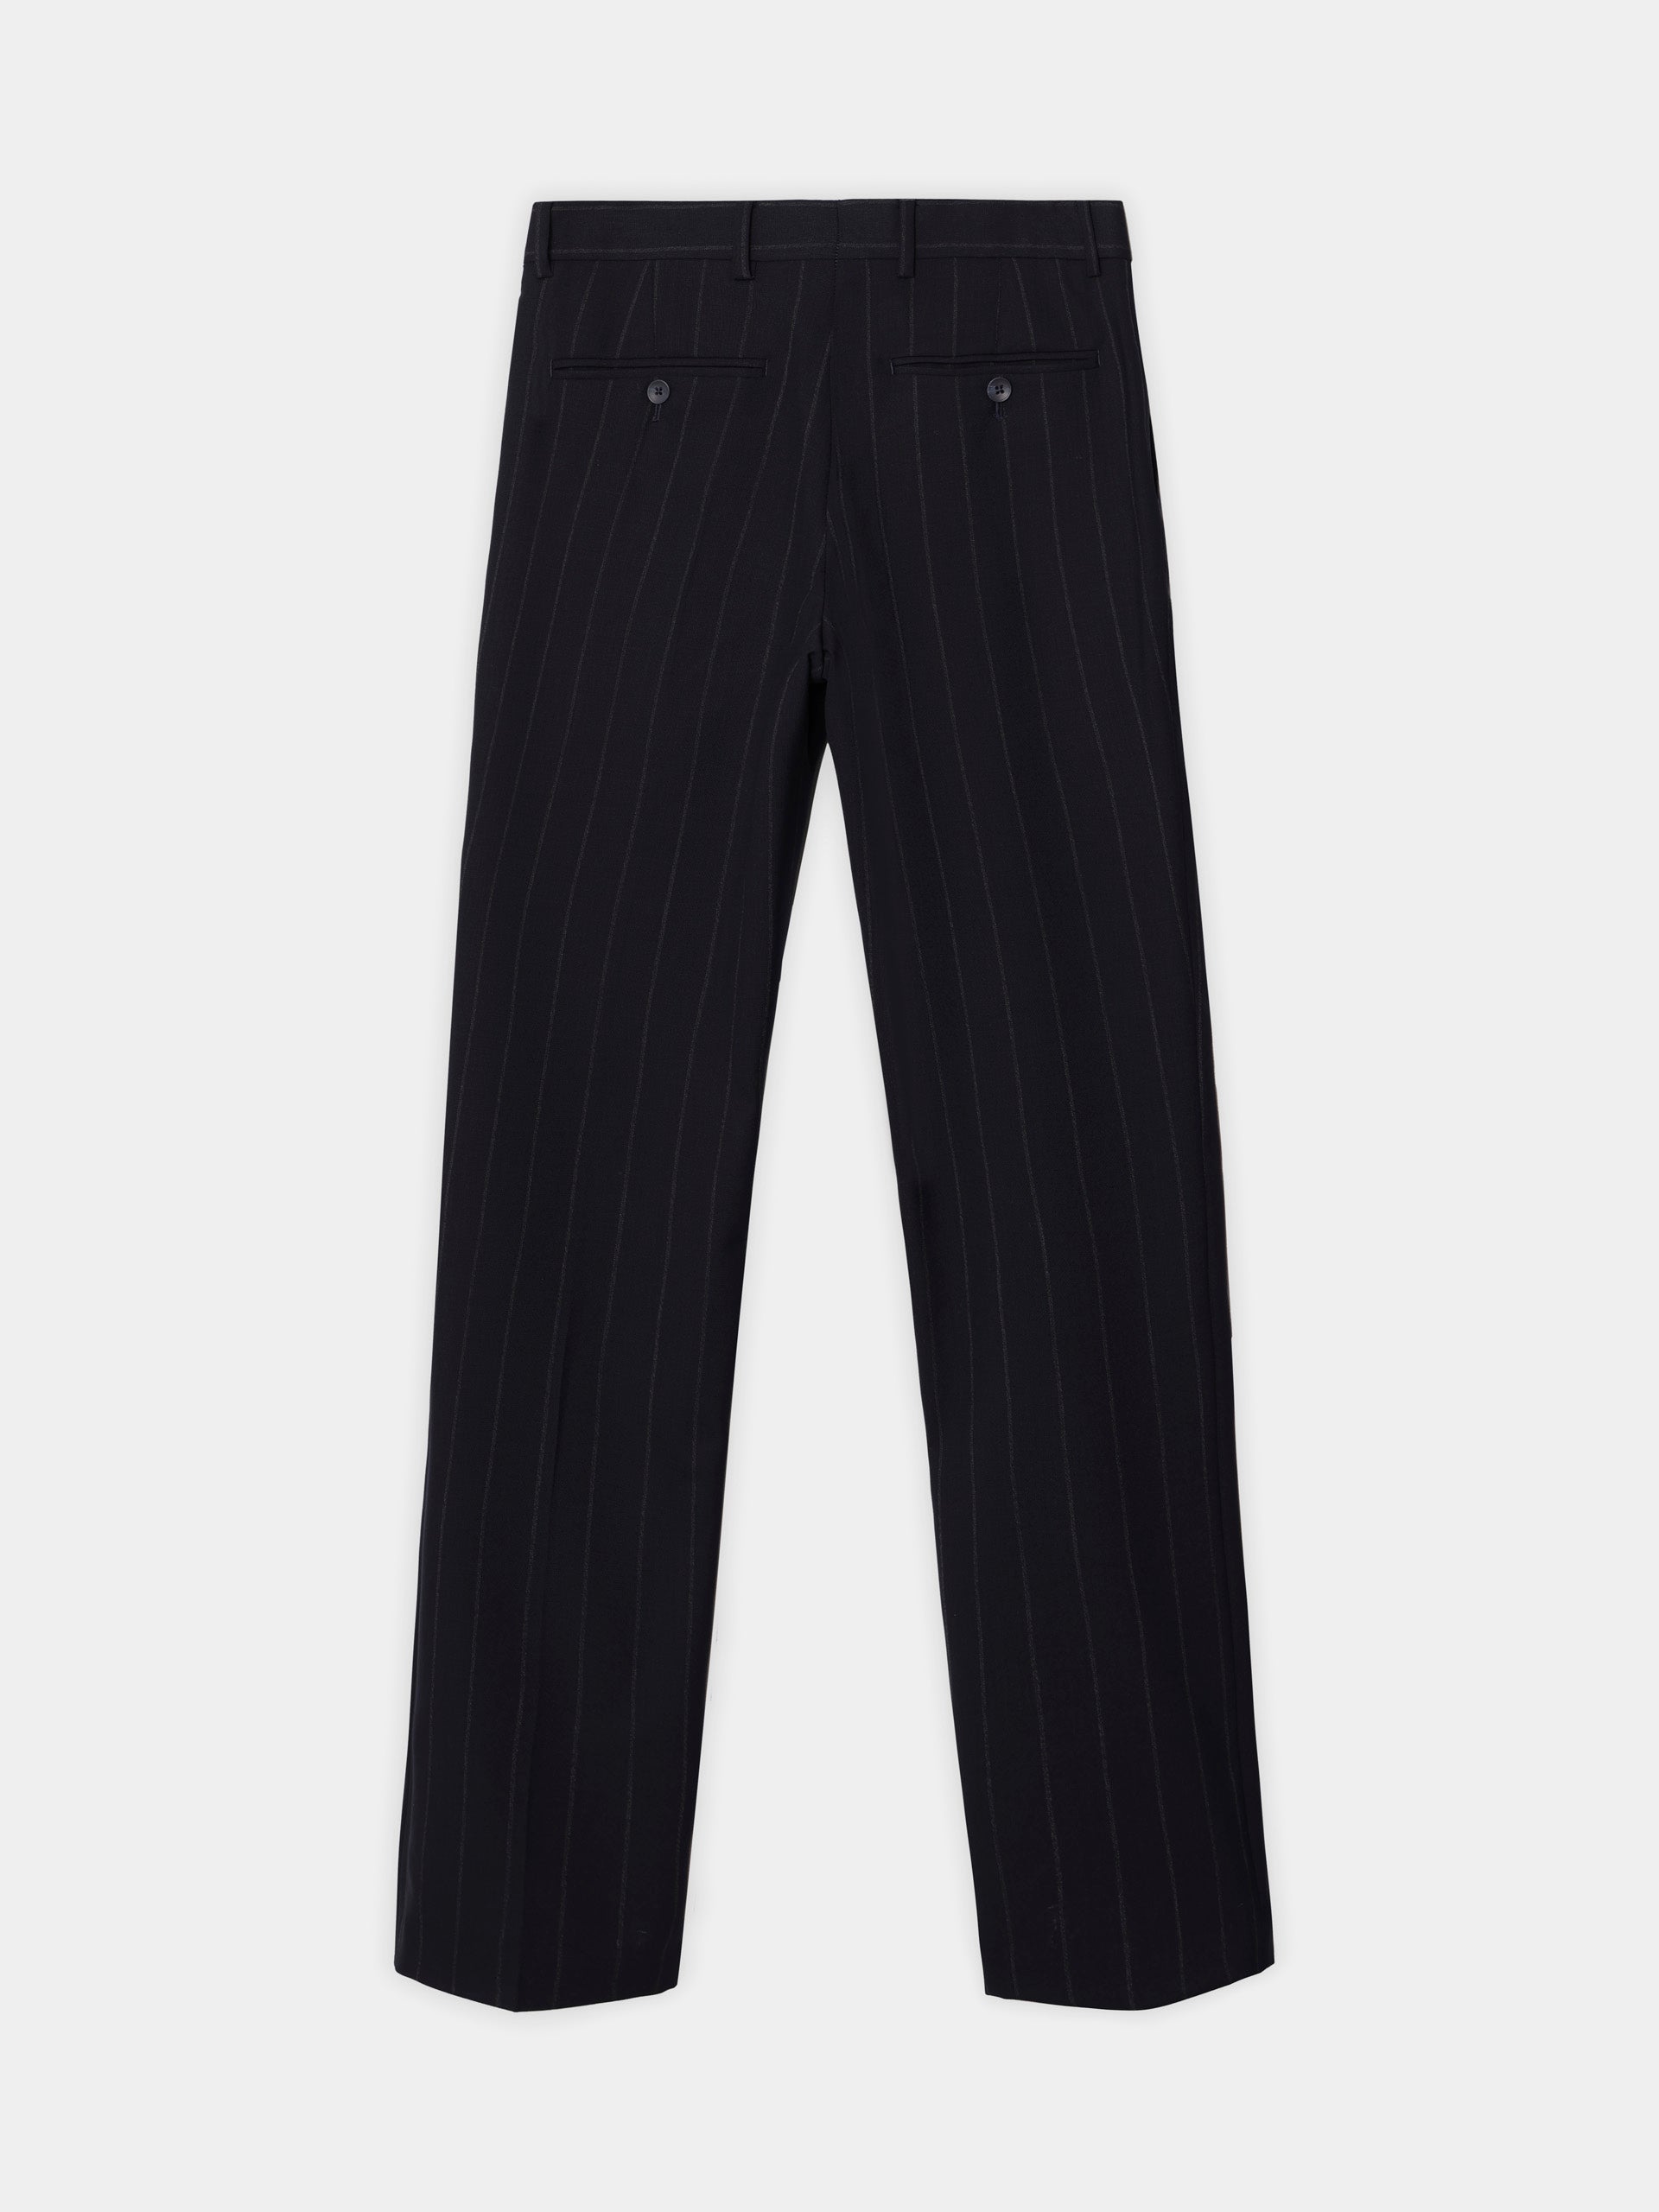 Navy blue pinstripe suit pants